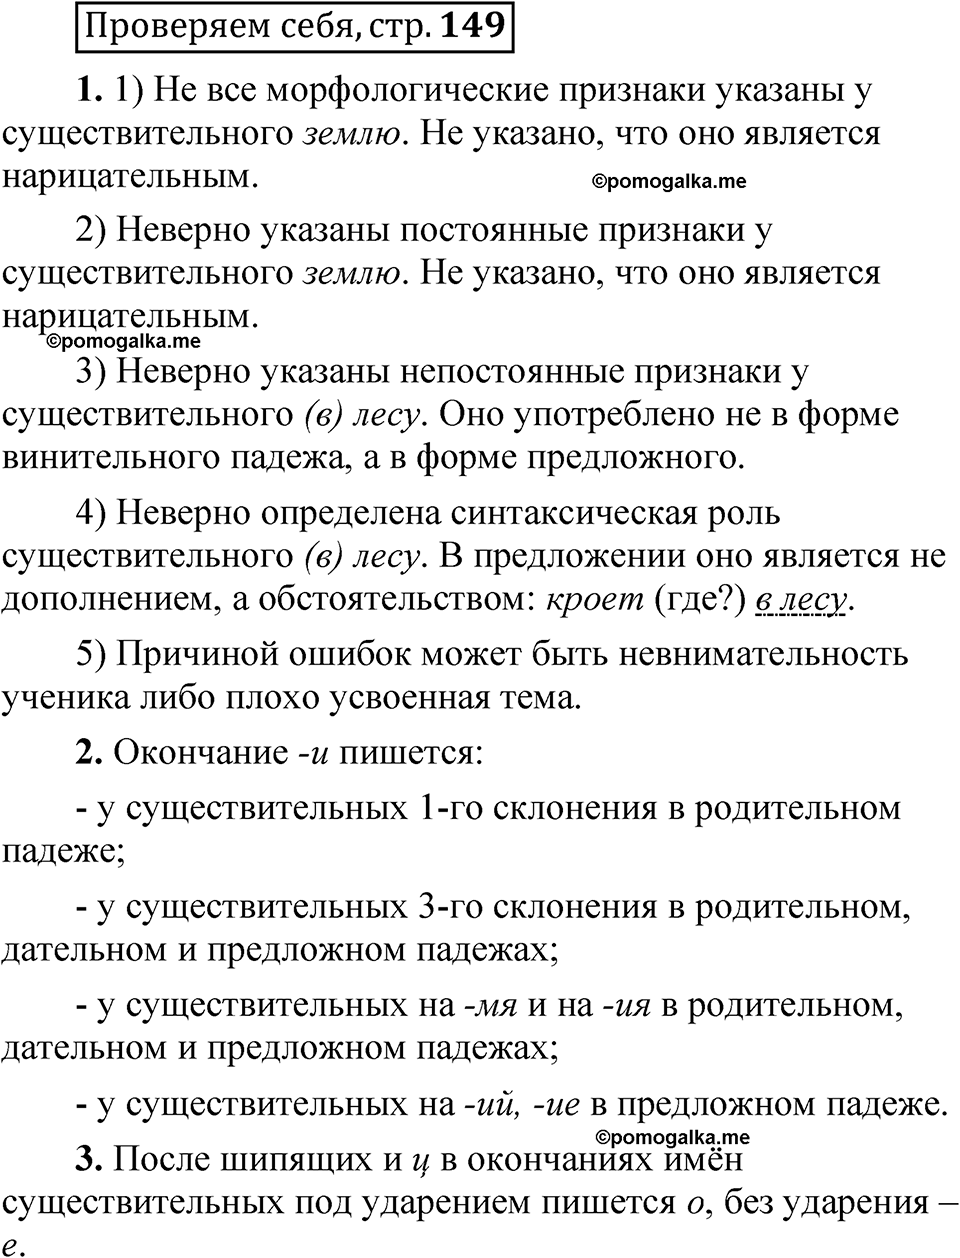 страница 149 Проверяем себя русский язык 5 класс Быстрова, Кибирева 2 часть 2021 год